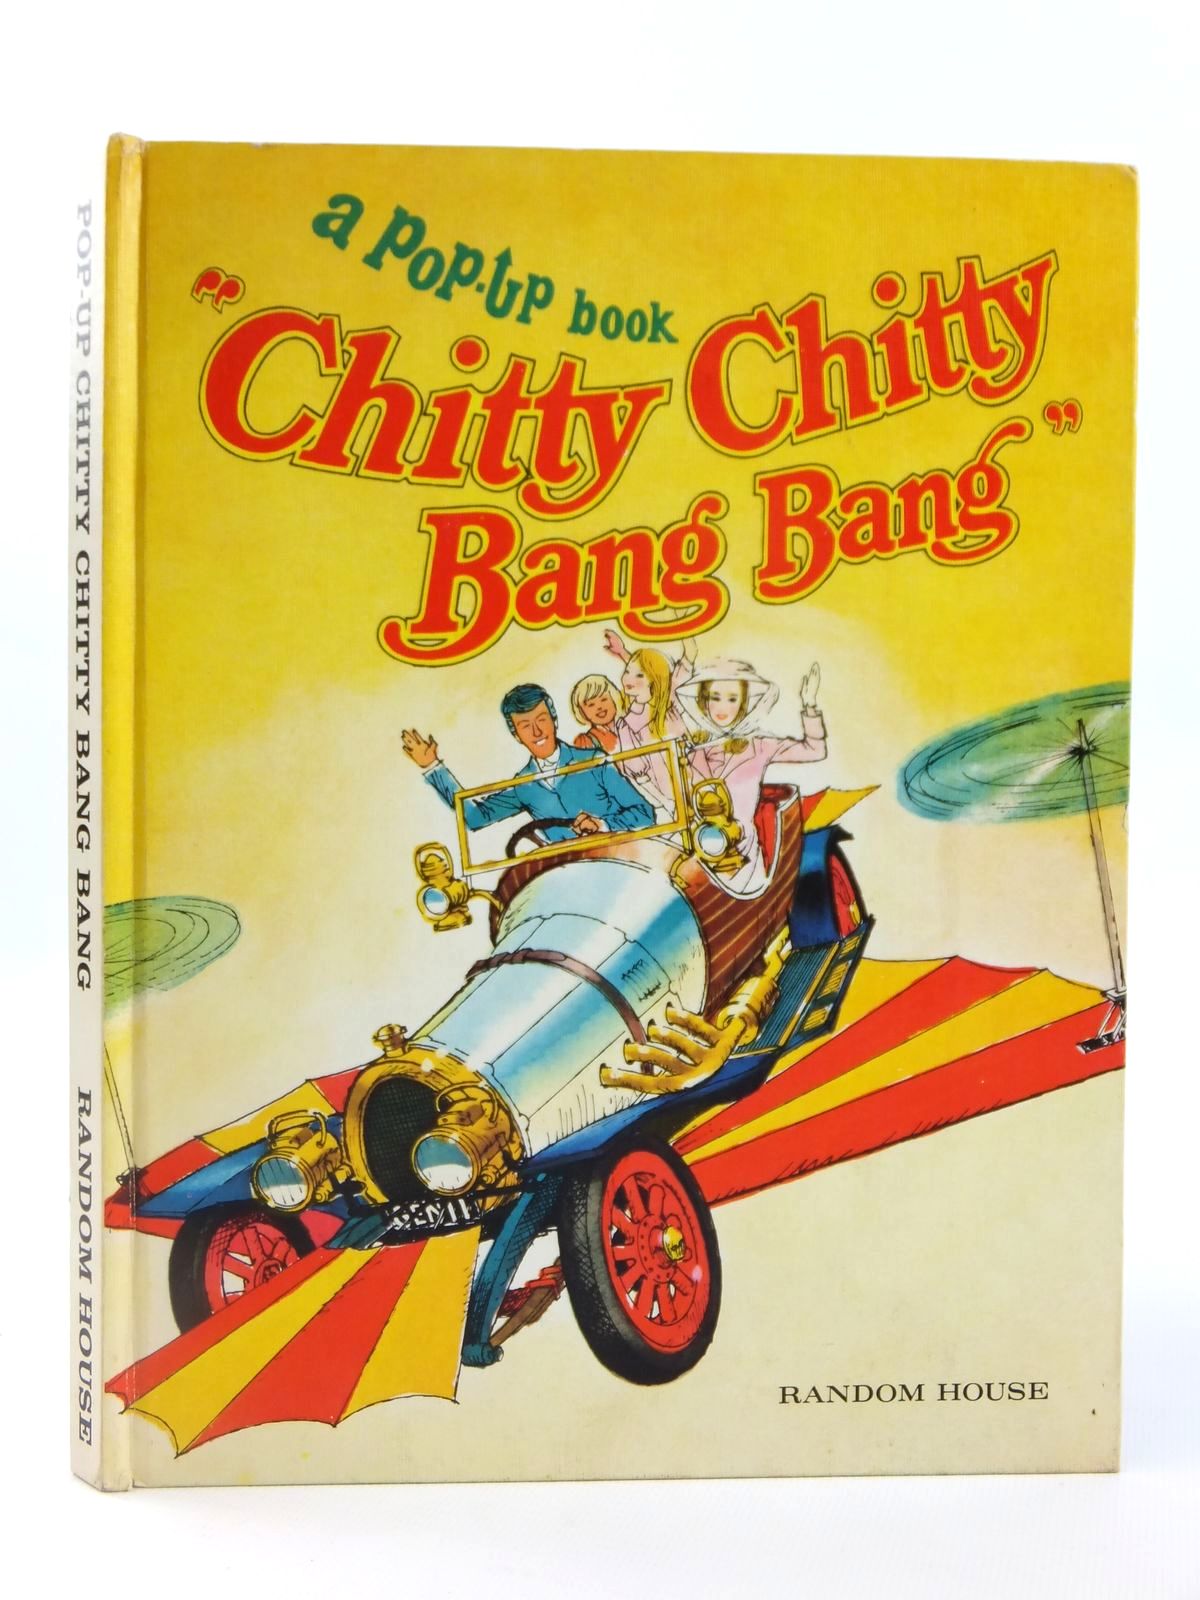 Chitty Chitty Bang Bang 1968. Mighty 44 Chitty Chitty Bang Bang. Sant Chitty.